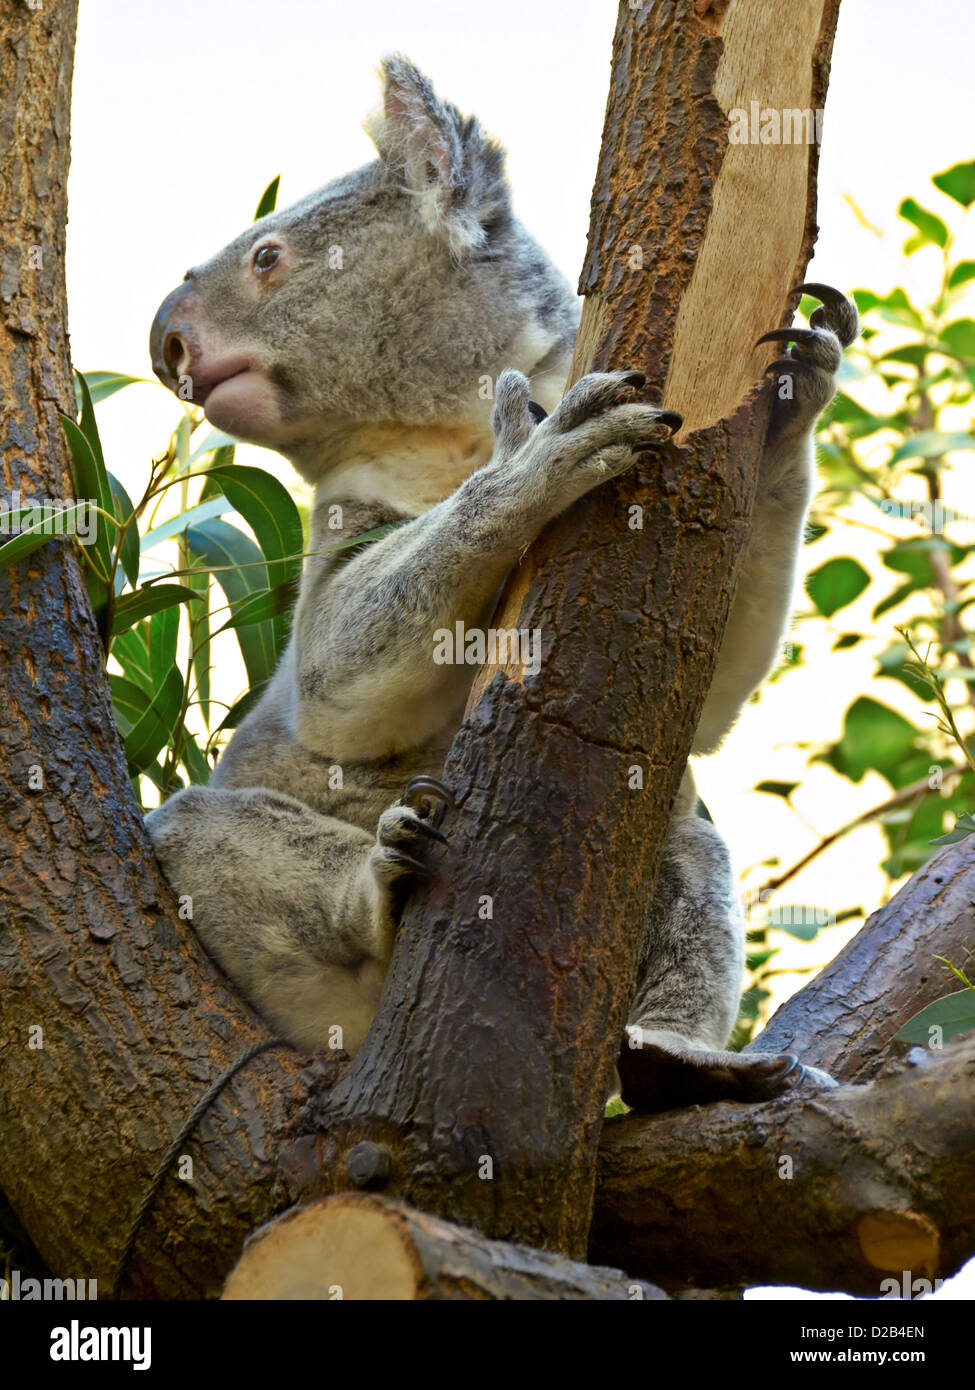 -El Koala- Animal australiano. Foto de stock